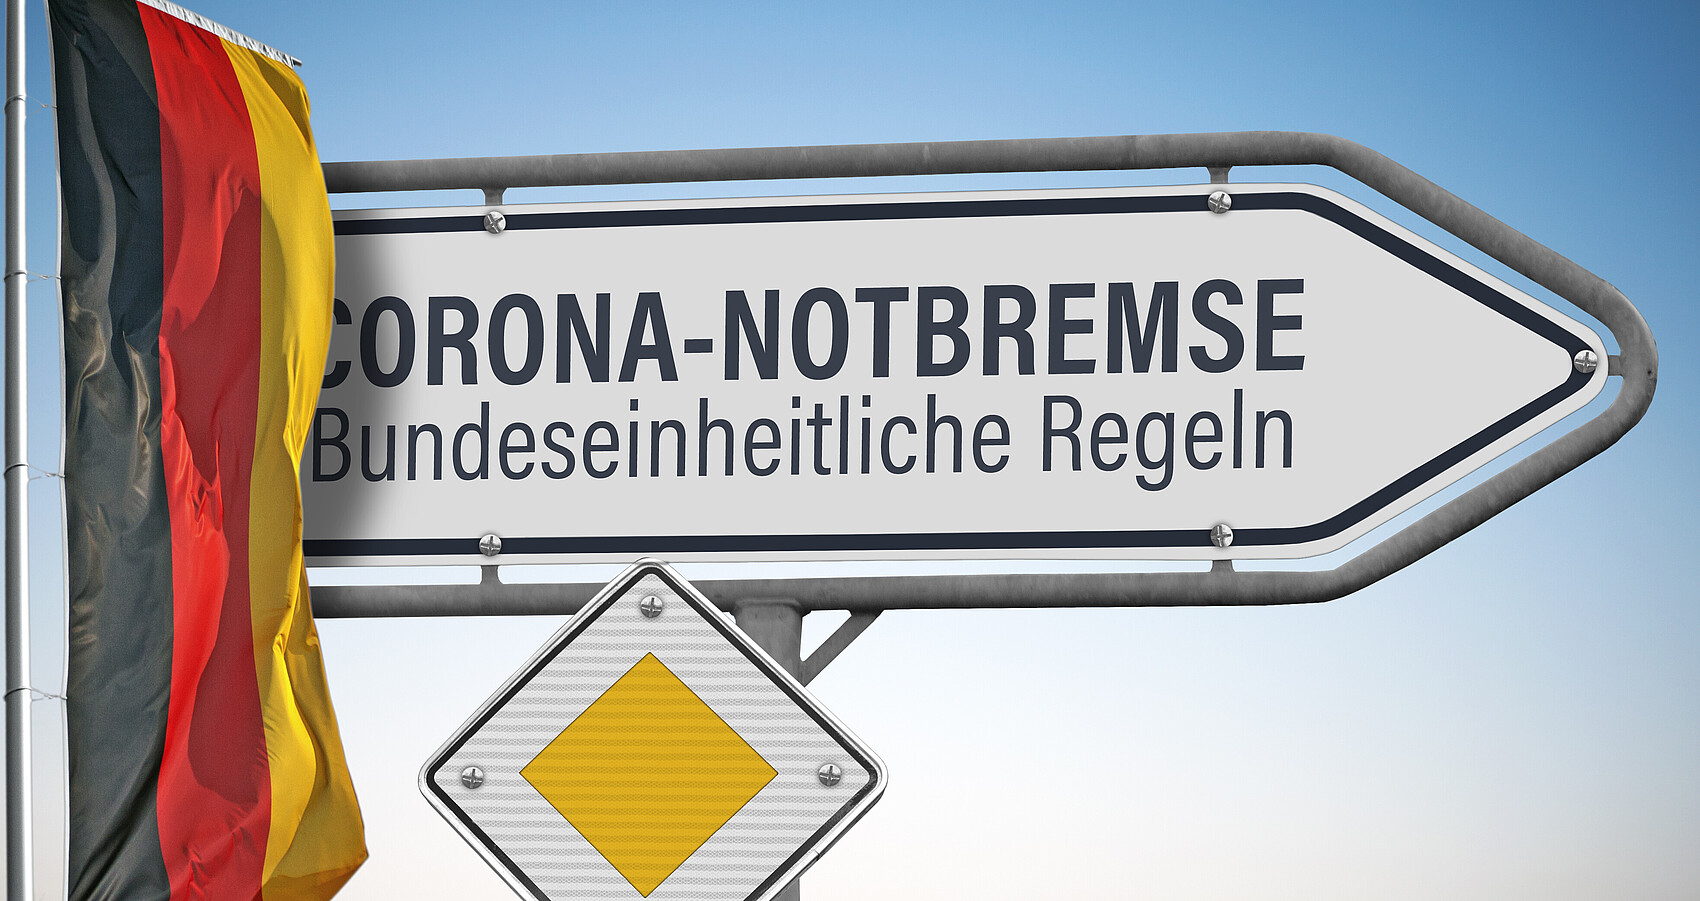 Schild mit Beschriftung CORONA-NOTBREMSE, Bundeseinheitliche Regeln; darunter ein Vorfahrtschild, links daneben die deutsche Nationalflagge